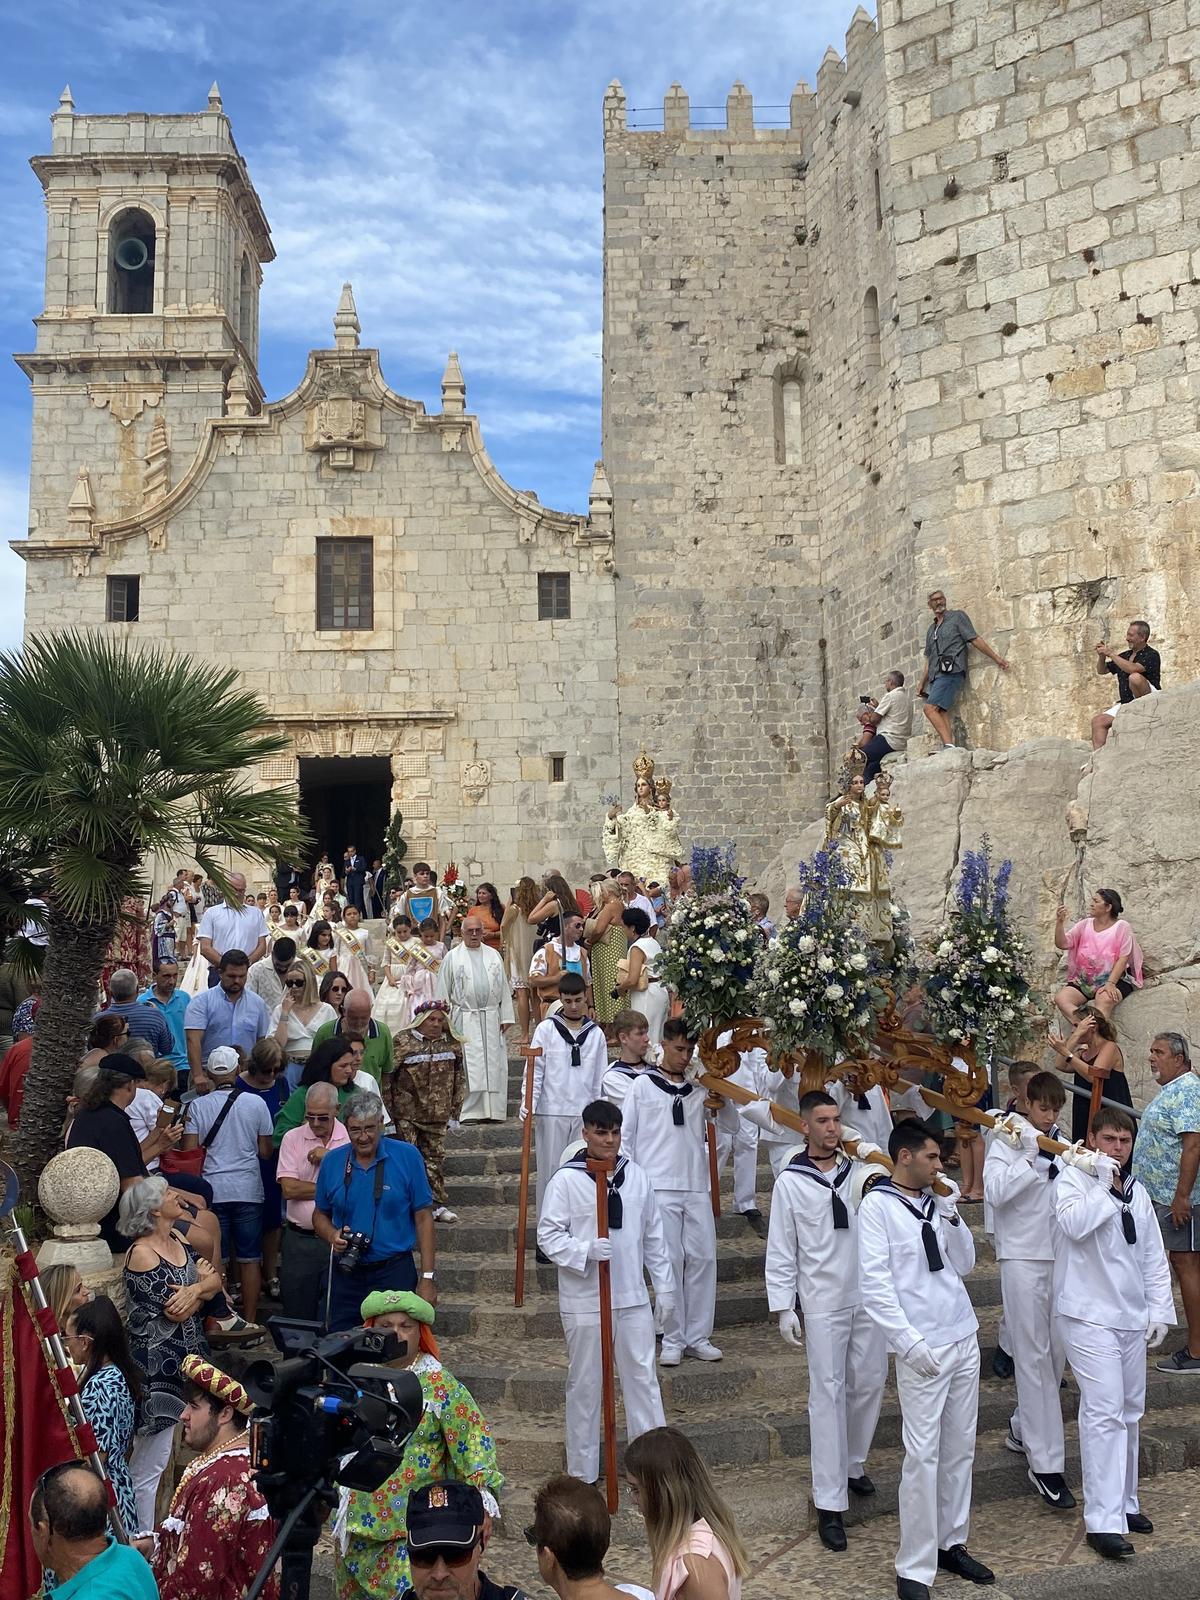 La ciudadanía de Peñíscola vive con auténtica pasión sus fiestas patronales debido a la devoción que profesan a su patrona.